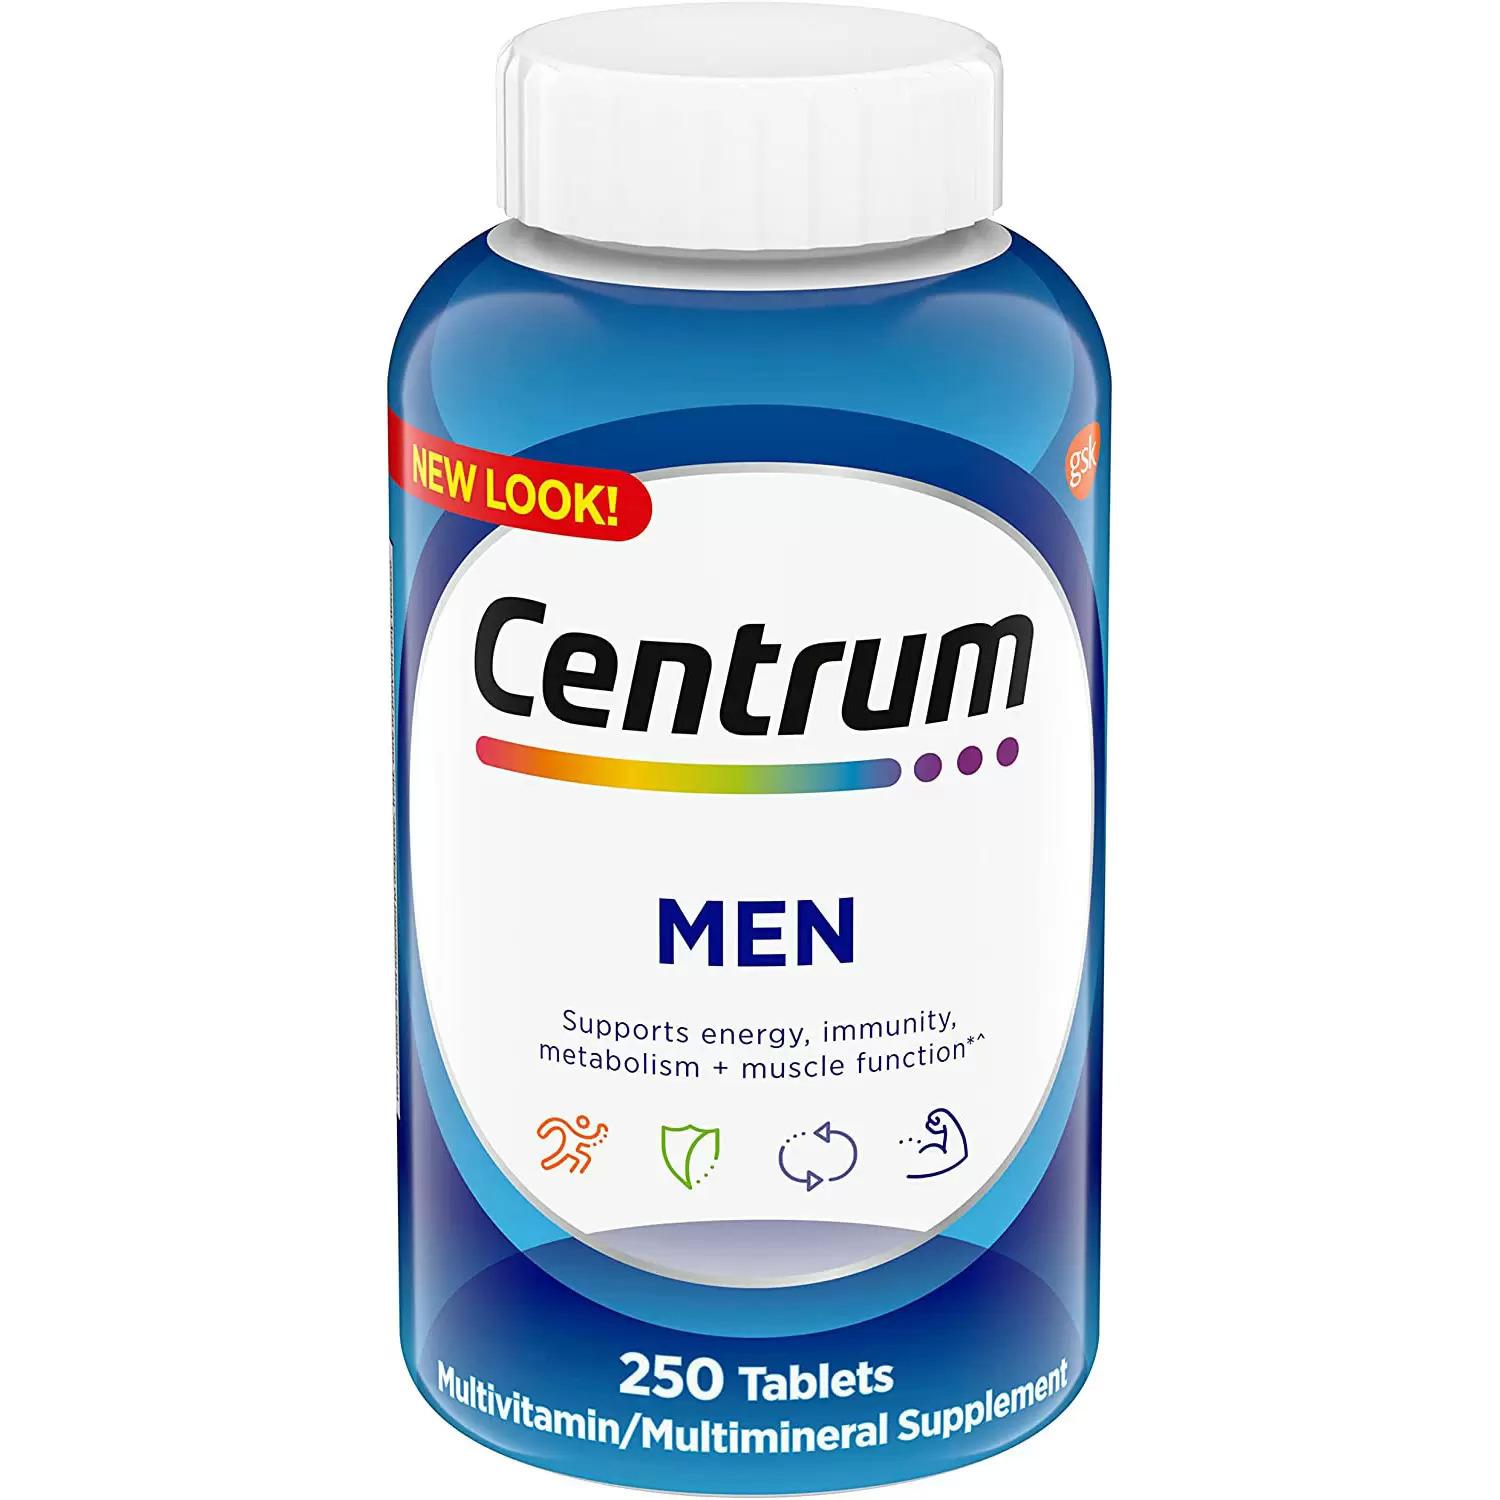 Centrum Mens Multivitamin Multimineral Supplement Tablets for $7.27